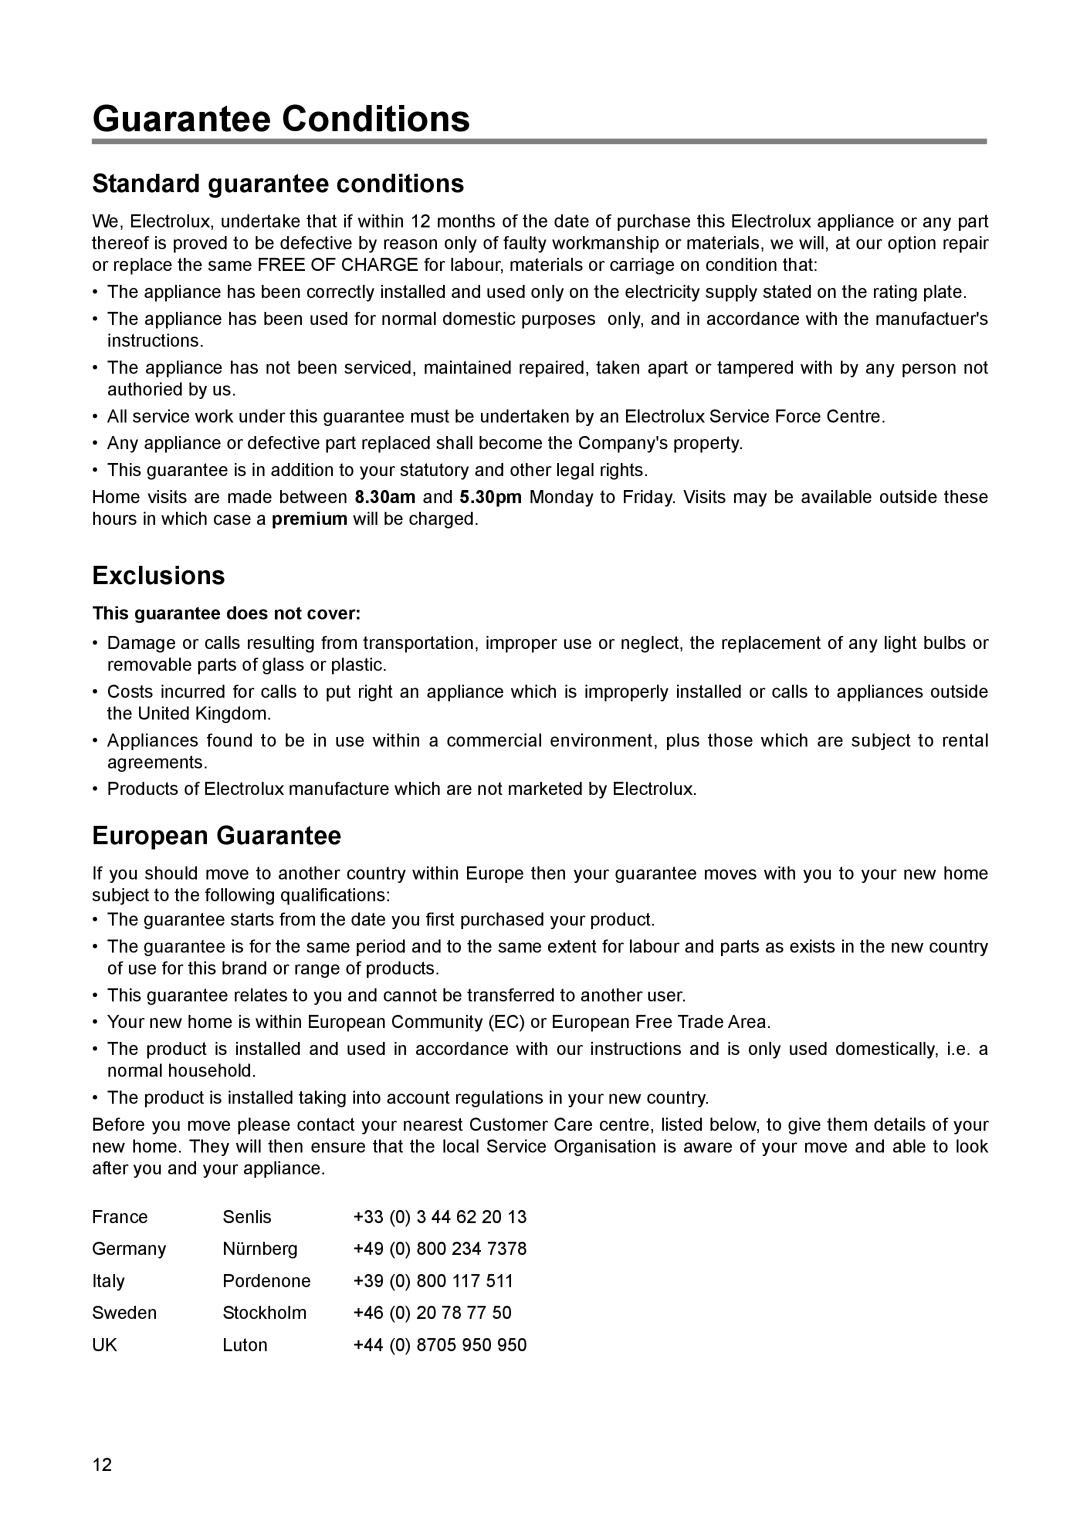 Electrolux EUN 12300 manual Guarantee Conditions, Standard guarantee conditions, Exclusions, European Guarantee 